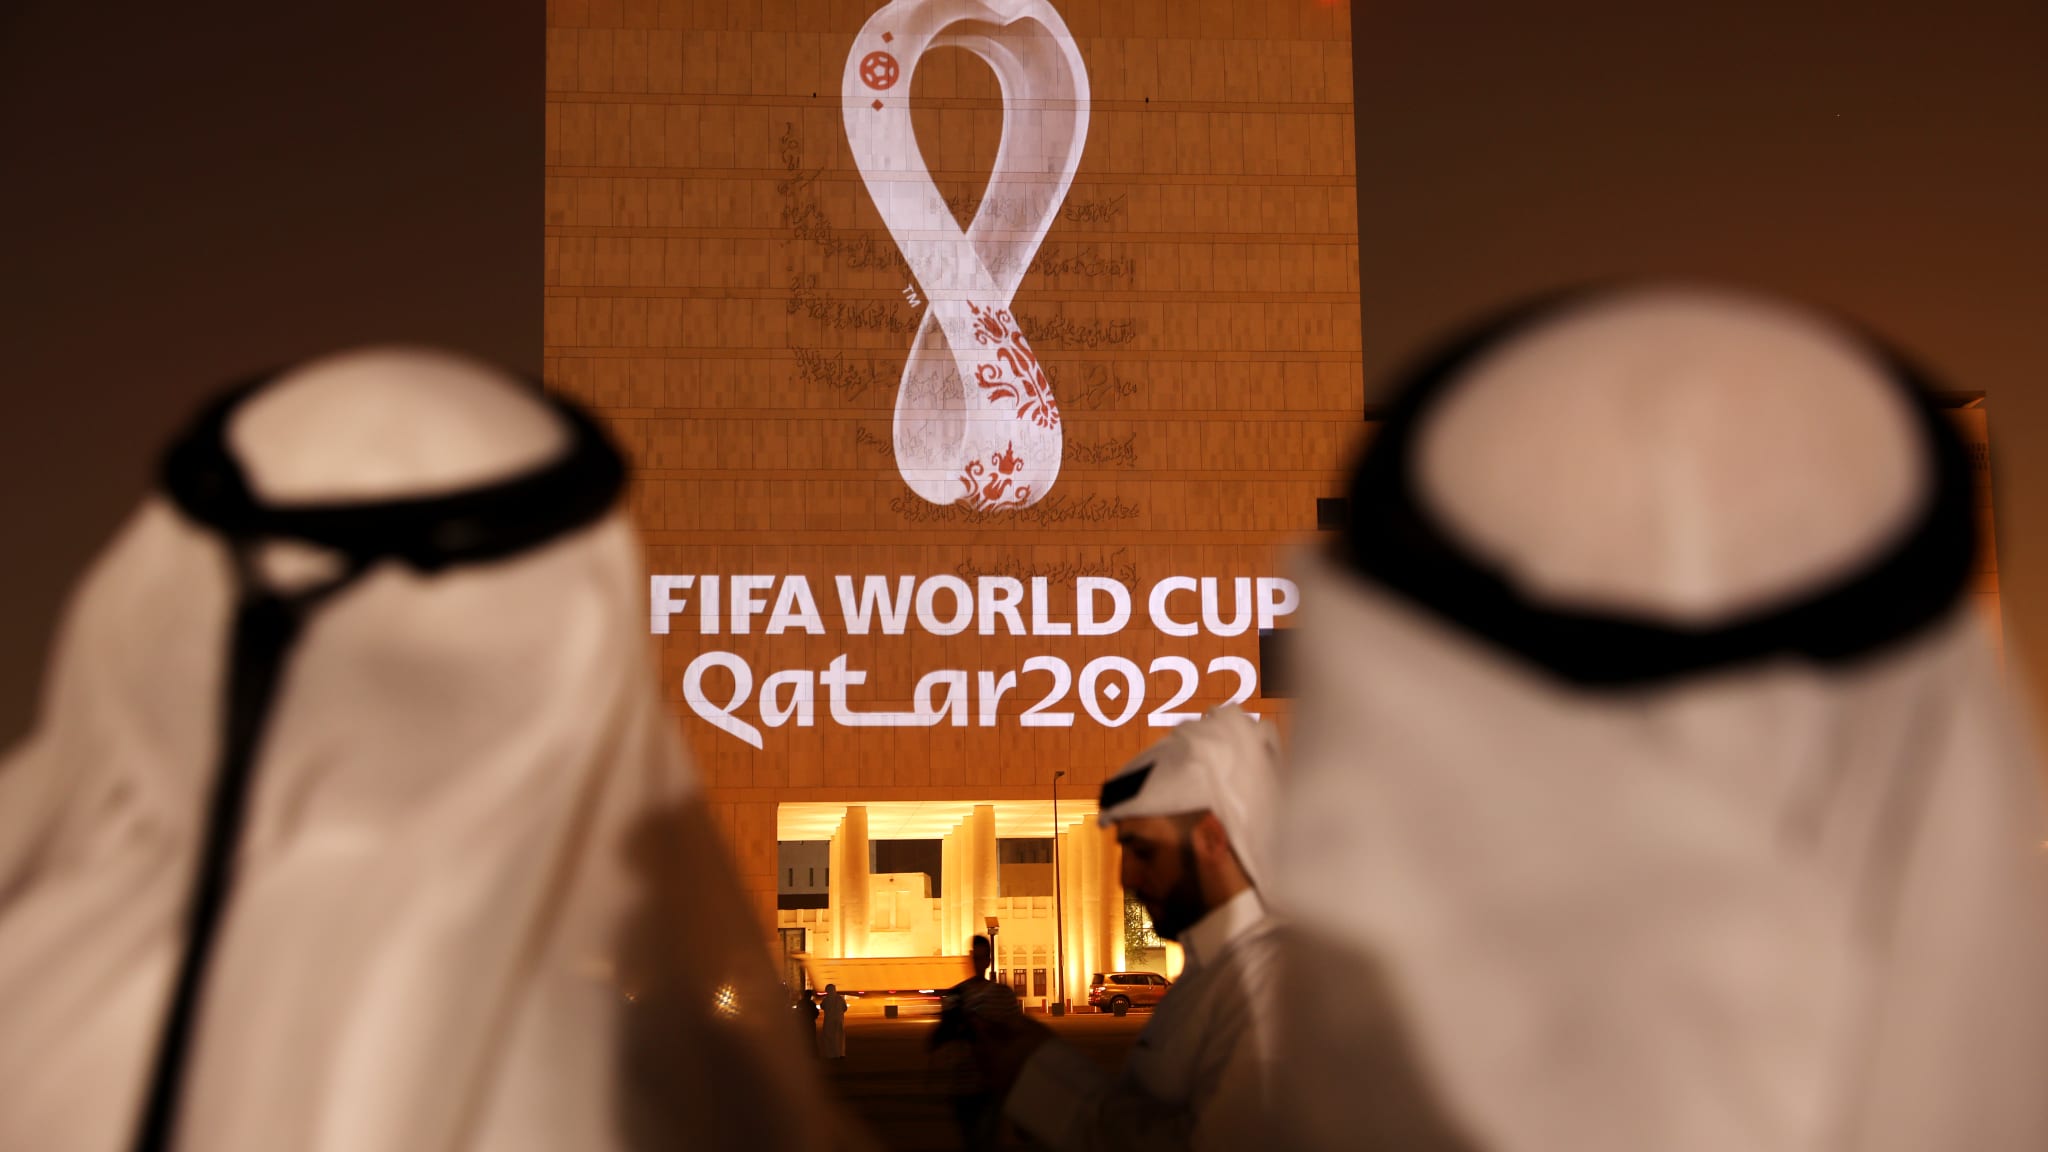 Thiết kế logo world cup 2022 chào đón sự kiện bóng đá hàng đầu thế giới